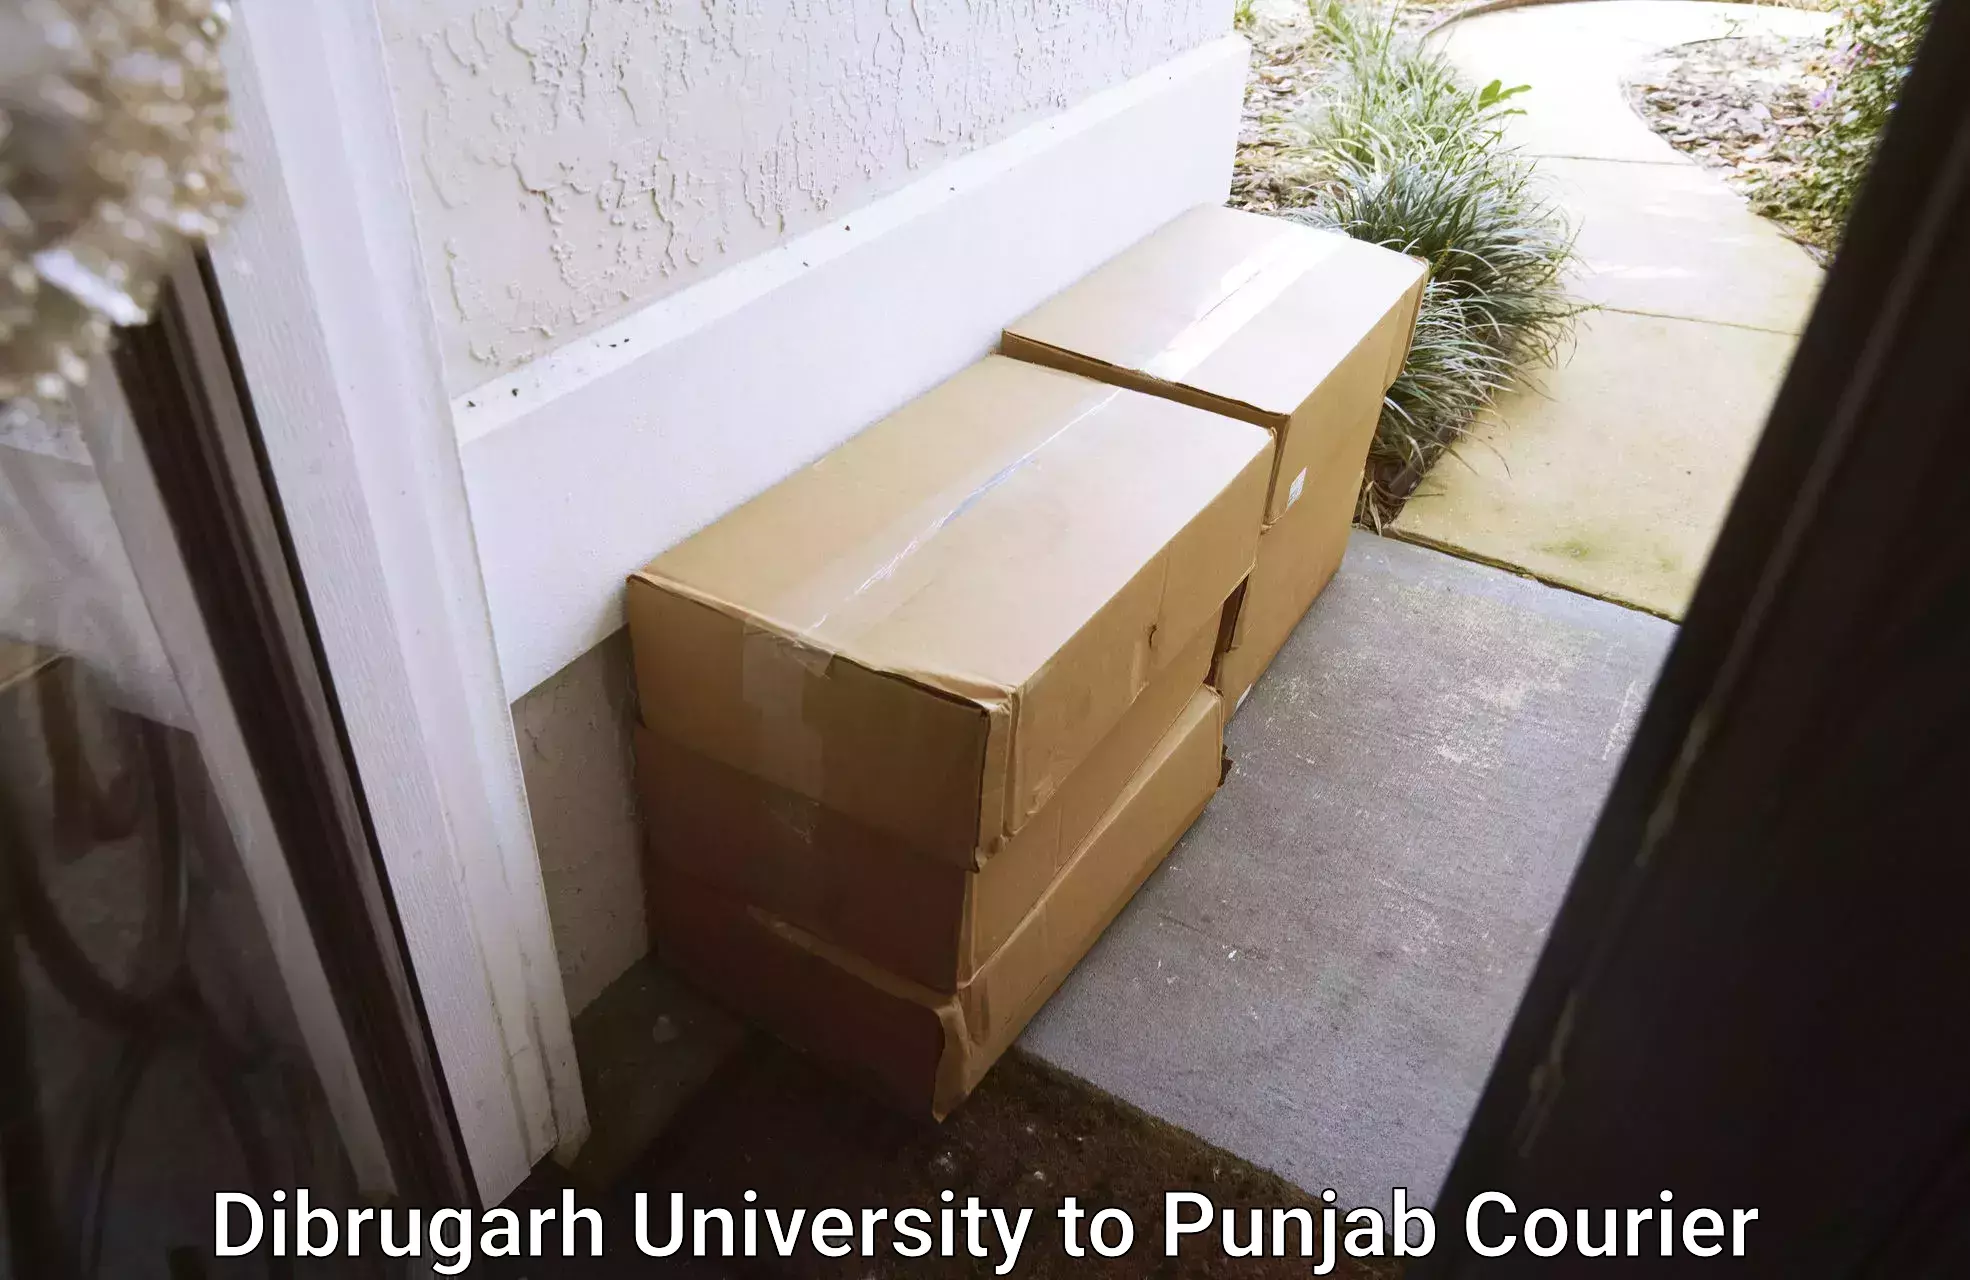 Door-to-door shipment Dibrugarh University to IIT Ropar